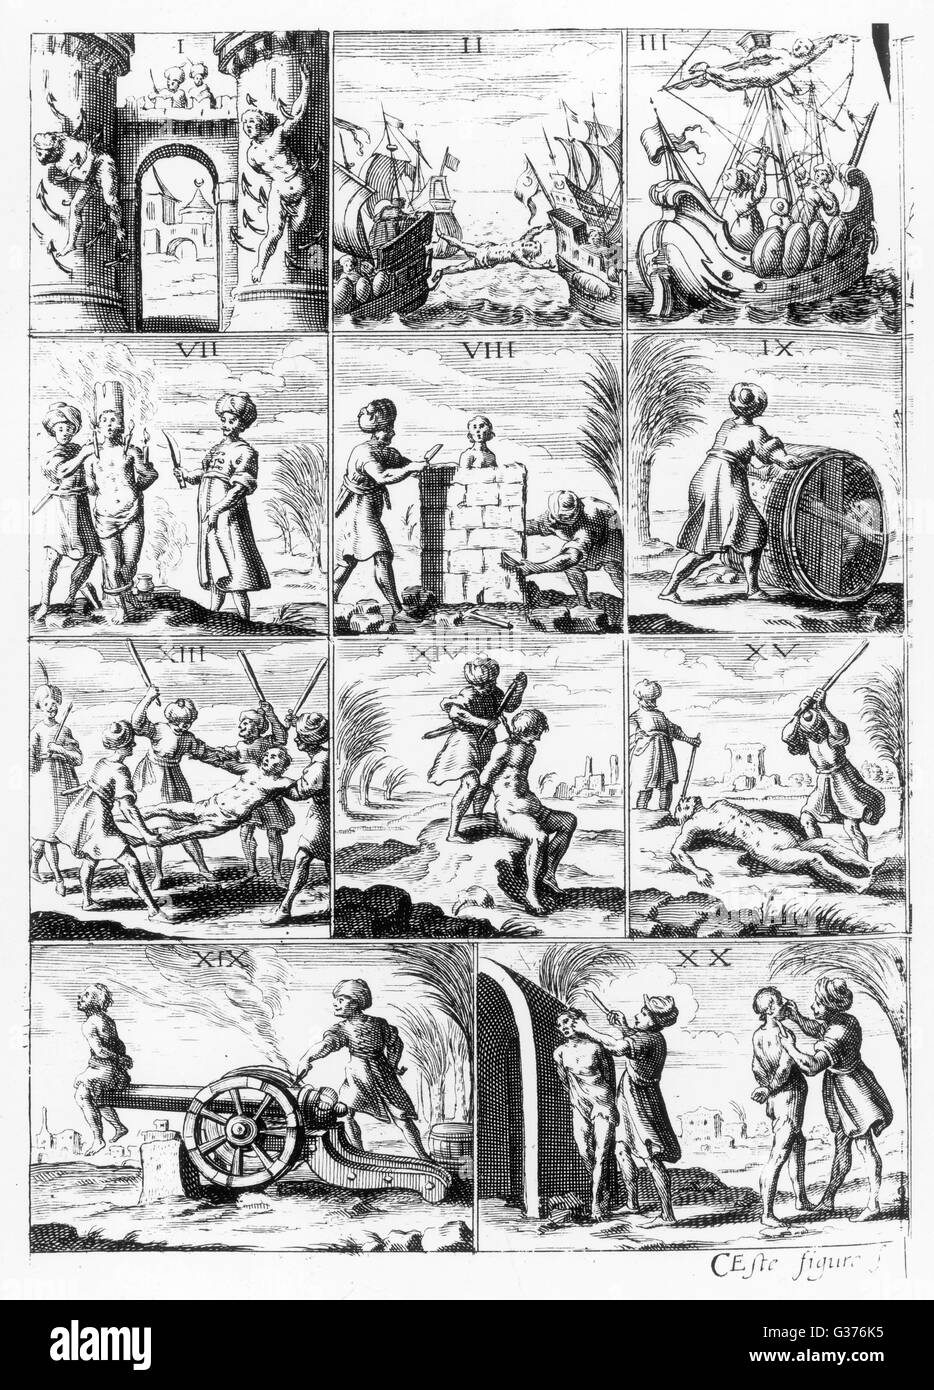 Exemples de méthodes utilisées par les Corsaires Barbaresques à la torture leurs captifs chrétiens. Banque D'Images